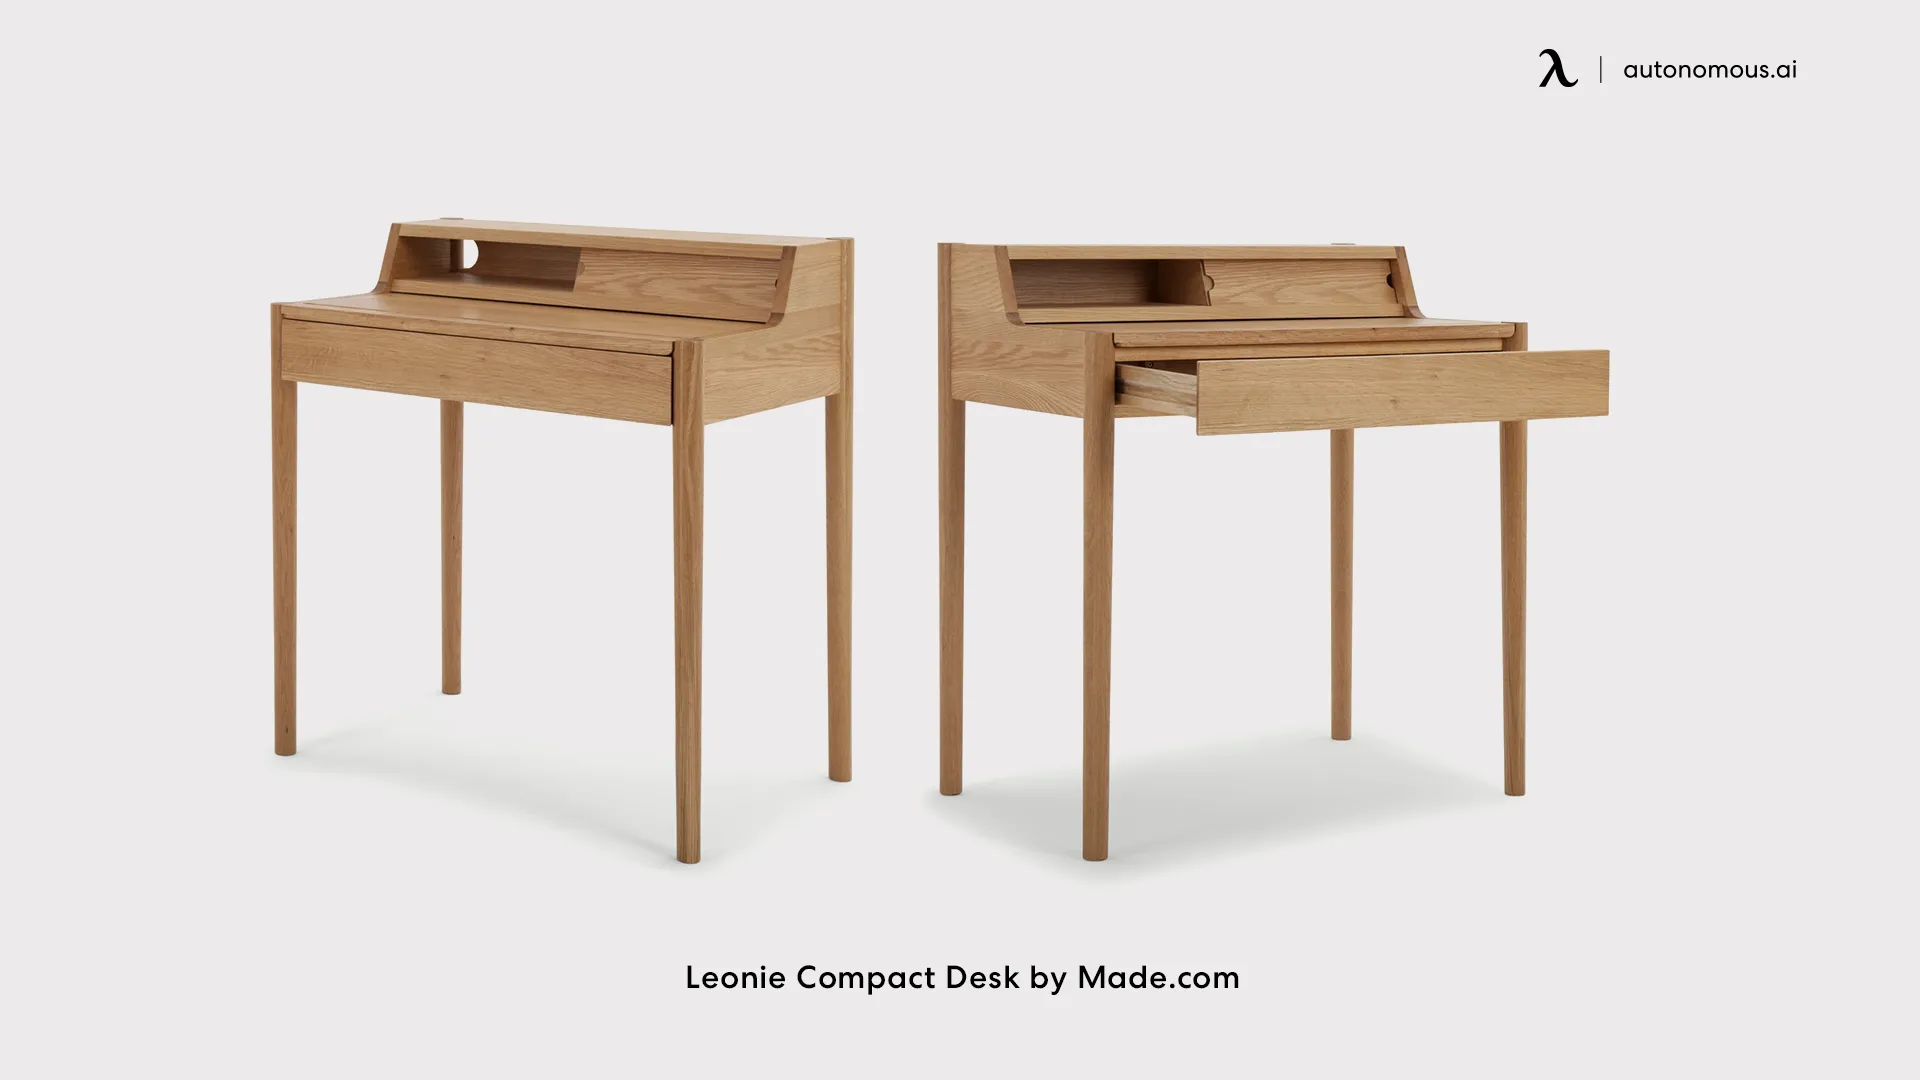 Leonie Compact Desk by Made.com